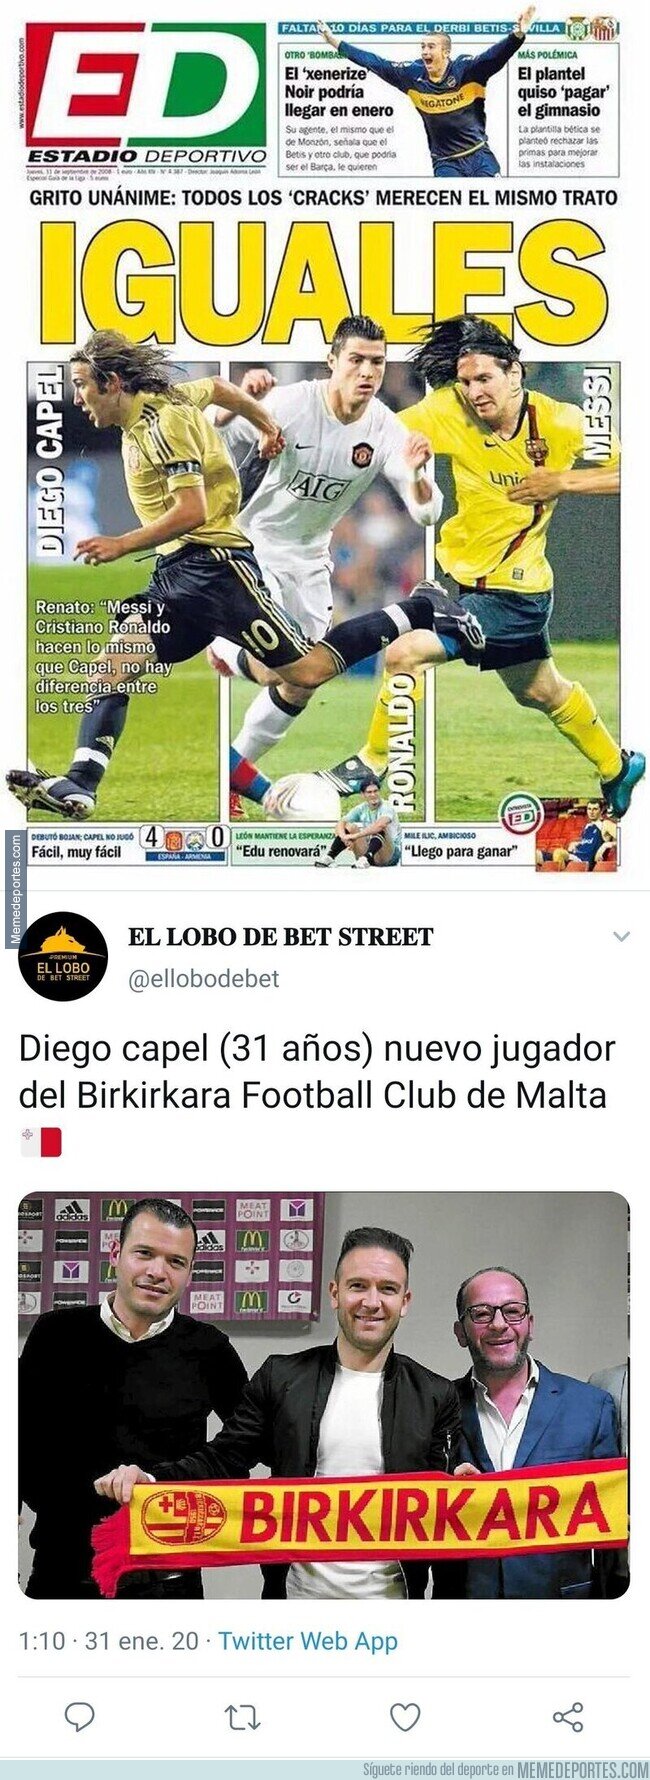 1097536 - ¿Recuerdas esta mítica portada en la que comparaban a Diego Capel con Messi y Cristiano? Pues ojo a esta novedad con la que te reirás